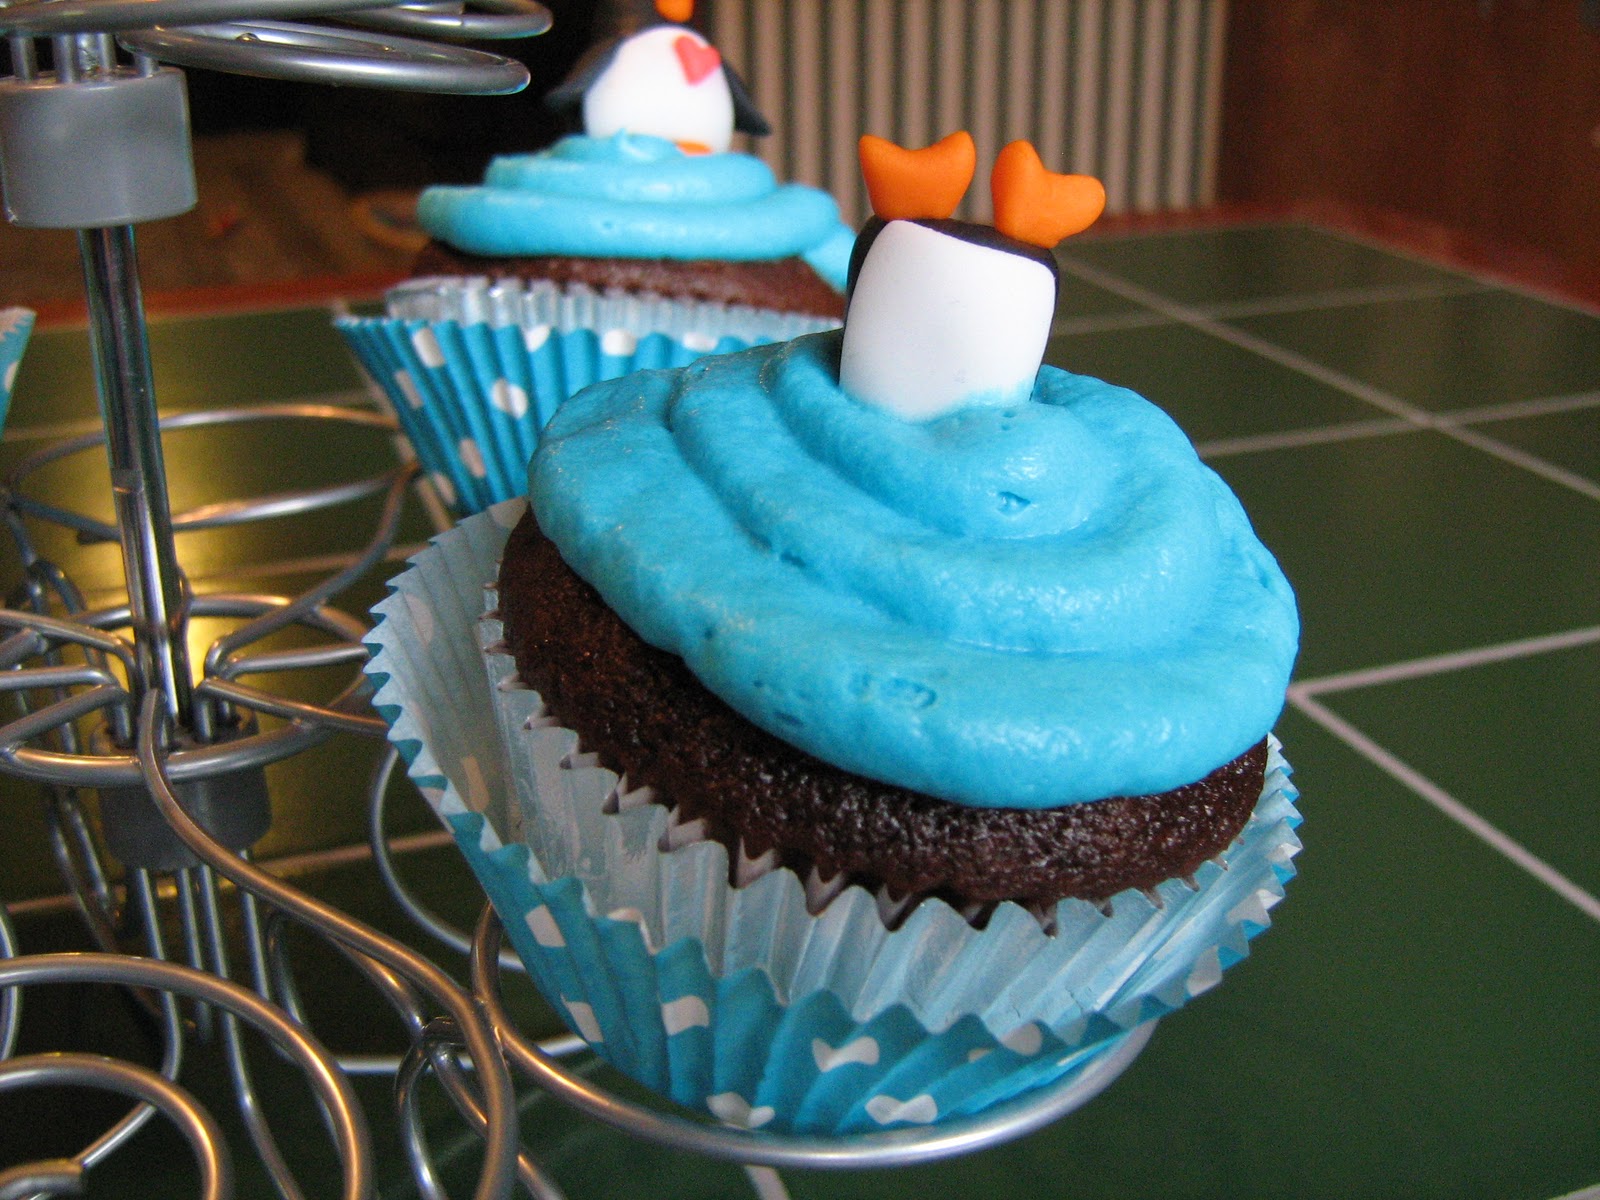 Penguin Cupcakes